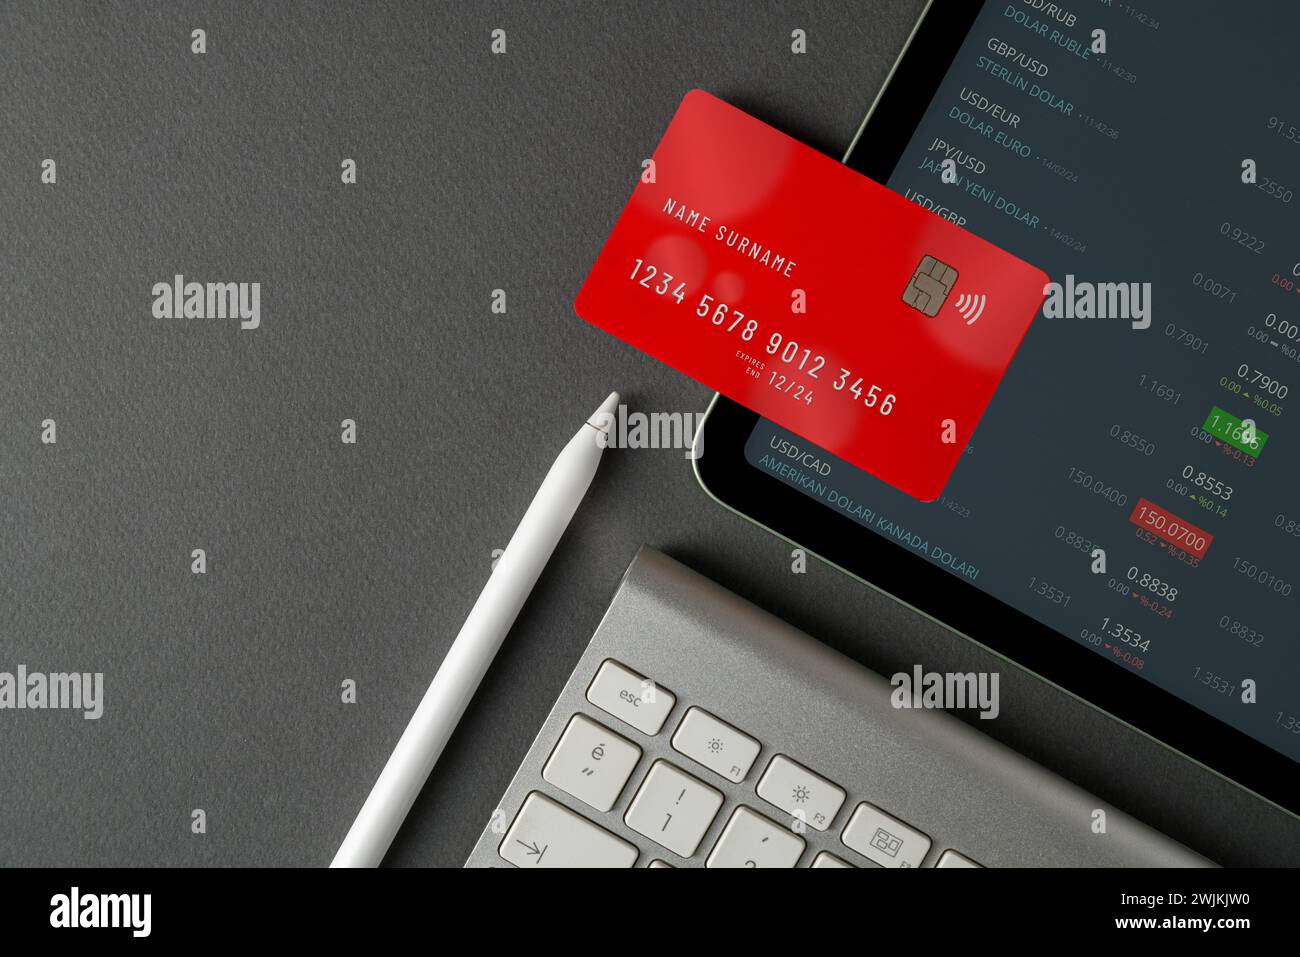 Vista dall'alto del tablet con tassi di cambio in tempo reale sullo schermo, carta di credito rossa e tastiera su tabella nera Foto Stock